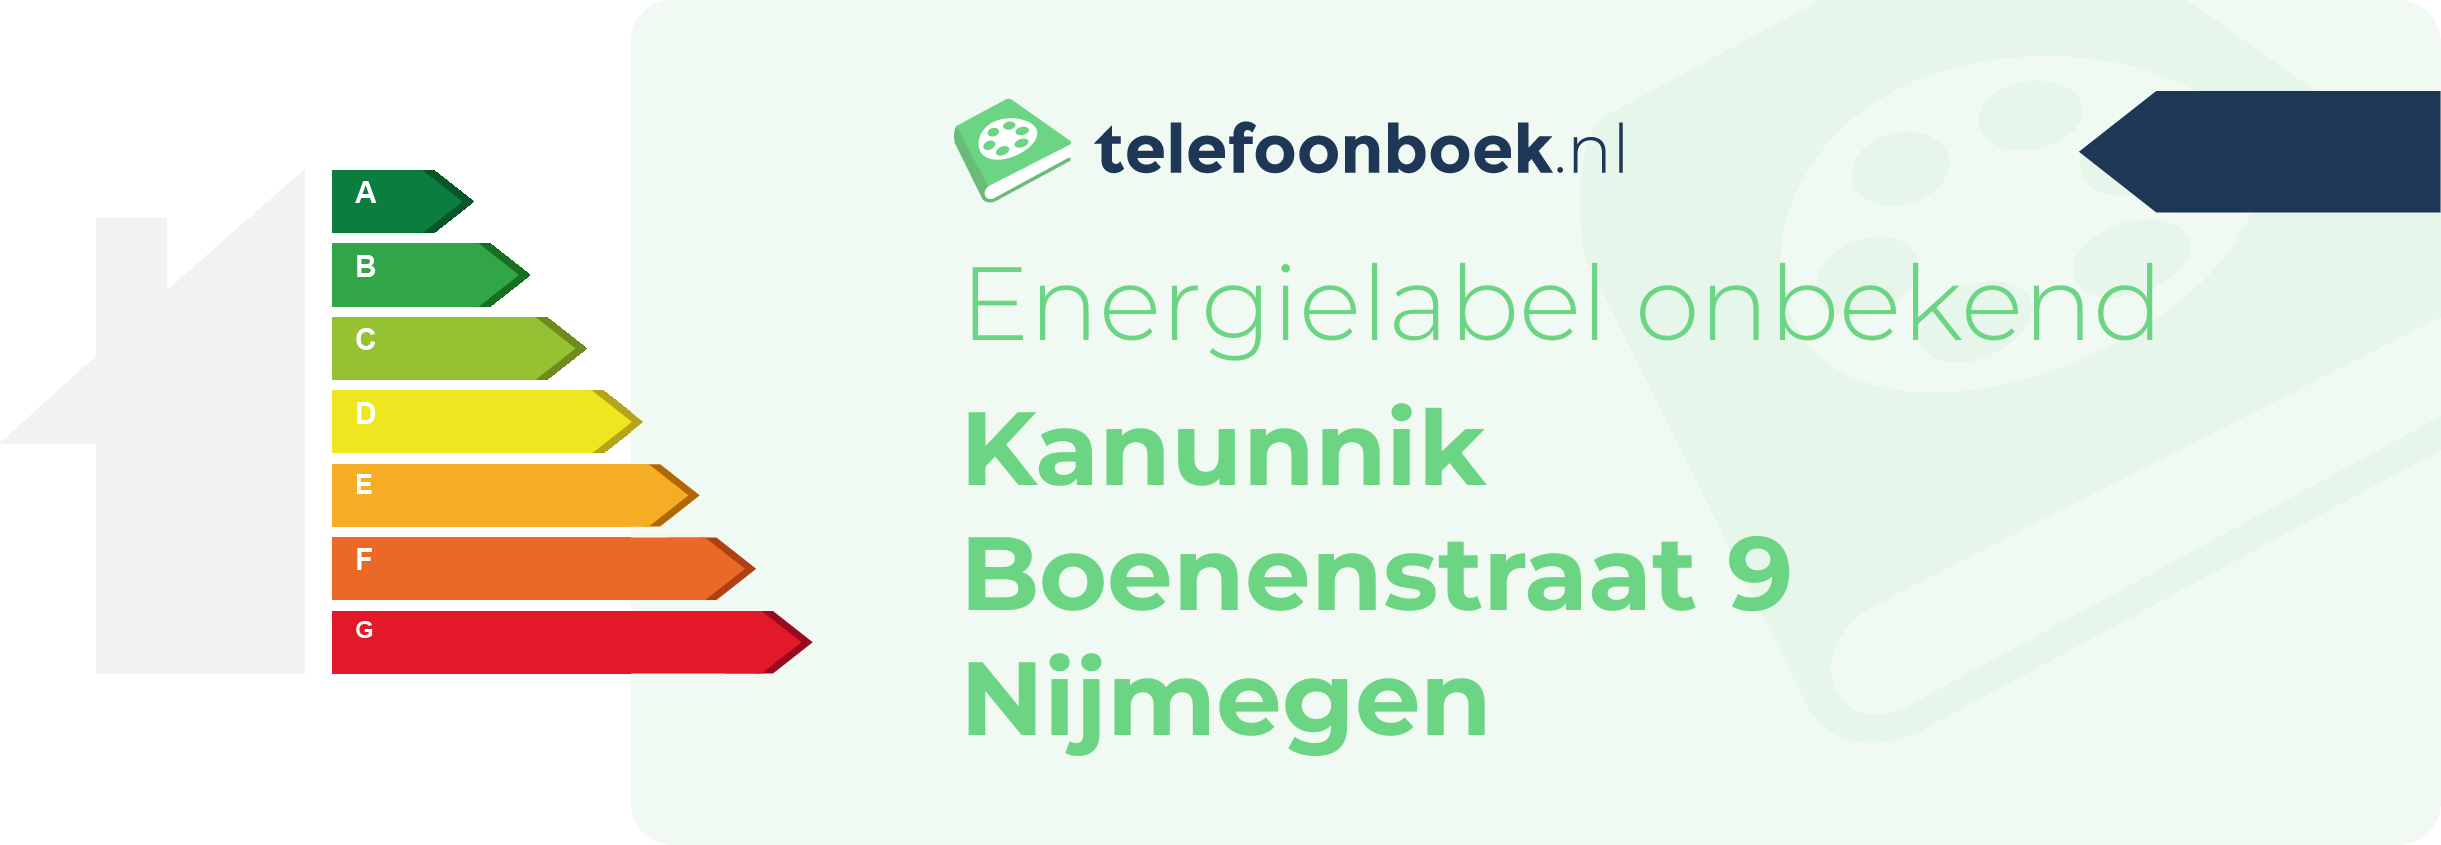 Energielabel Kanunnik Boenenstraat 9 Nijmegen